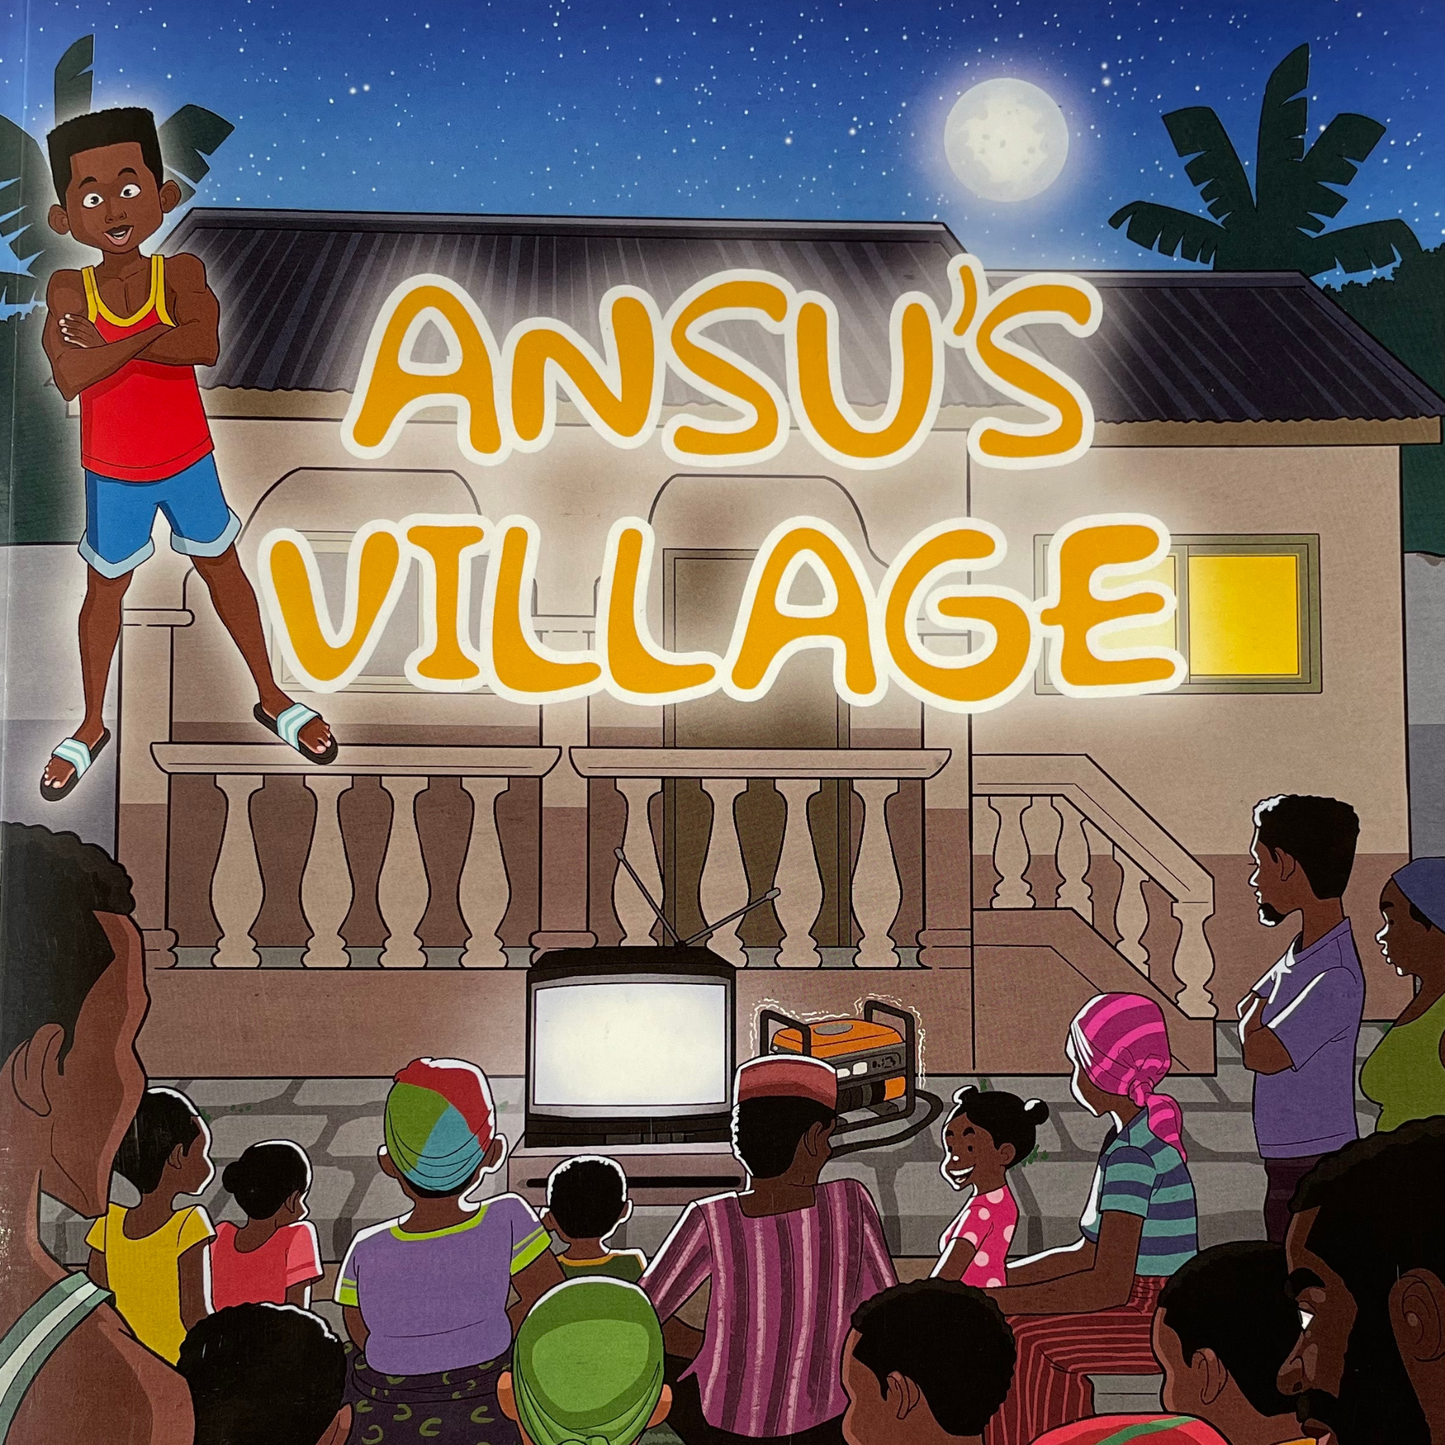 Ansu's Village